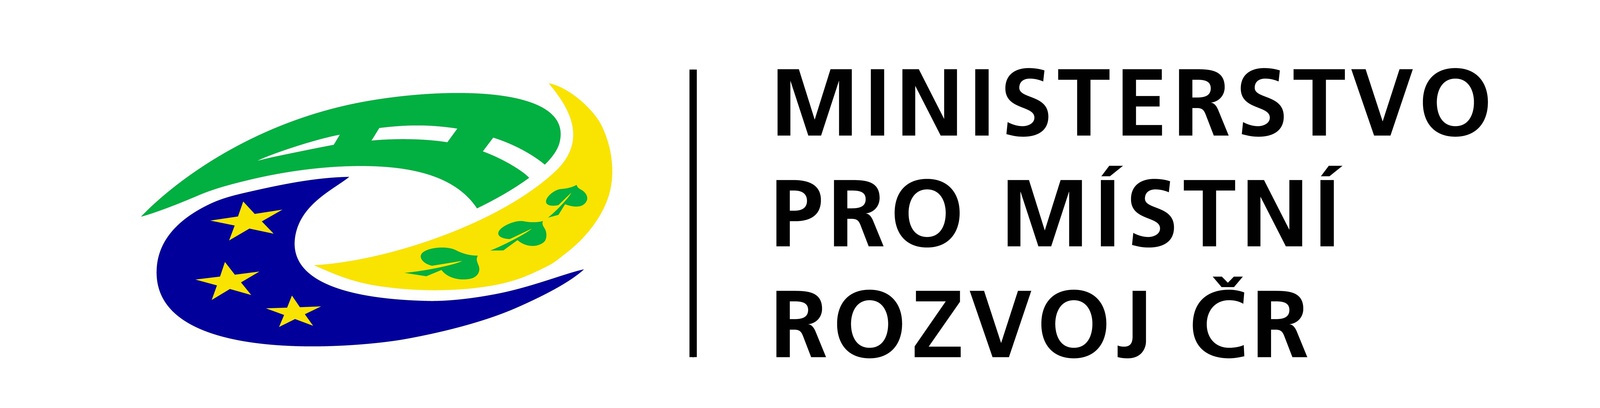 Obrázek: Ministerstvo pro místní rozvoj ČR